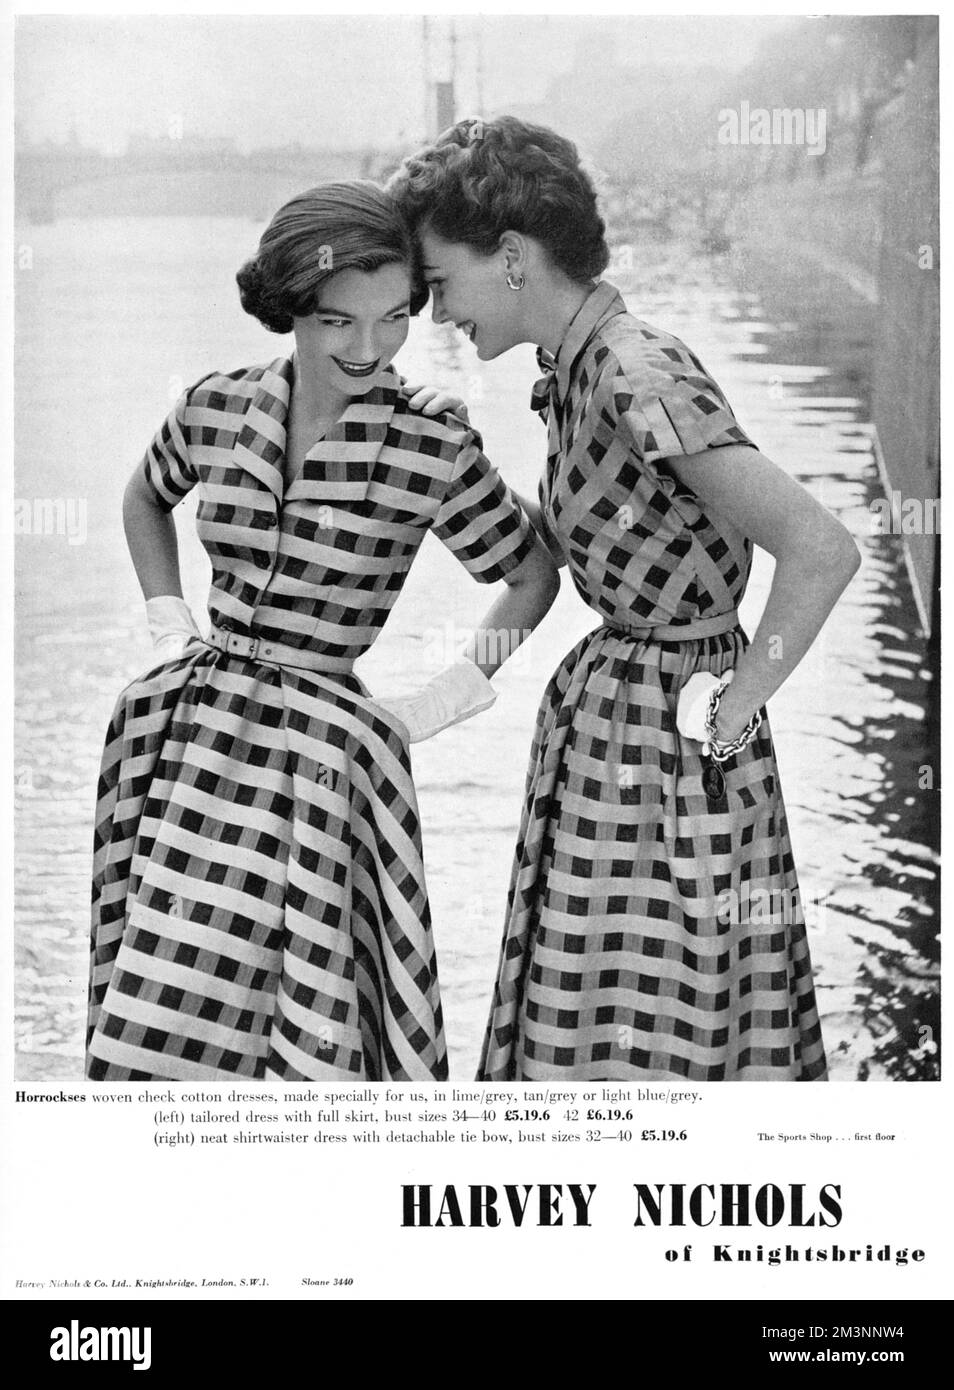 Zwei Freunde, die sehr ähnliche karierte Baumwollkleider in Horrockses-Stoff tragen, teilen einen Witz. 1953 Stockfoto